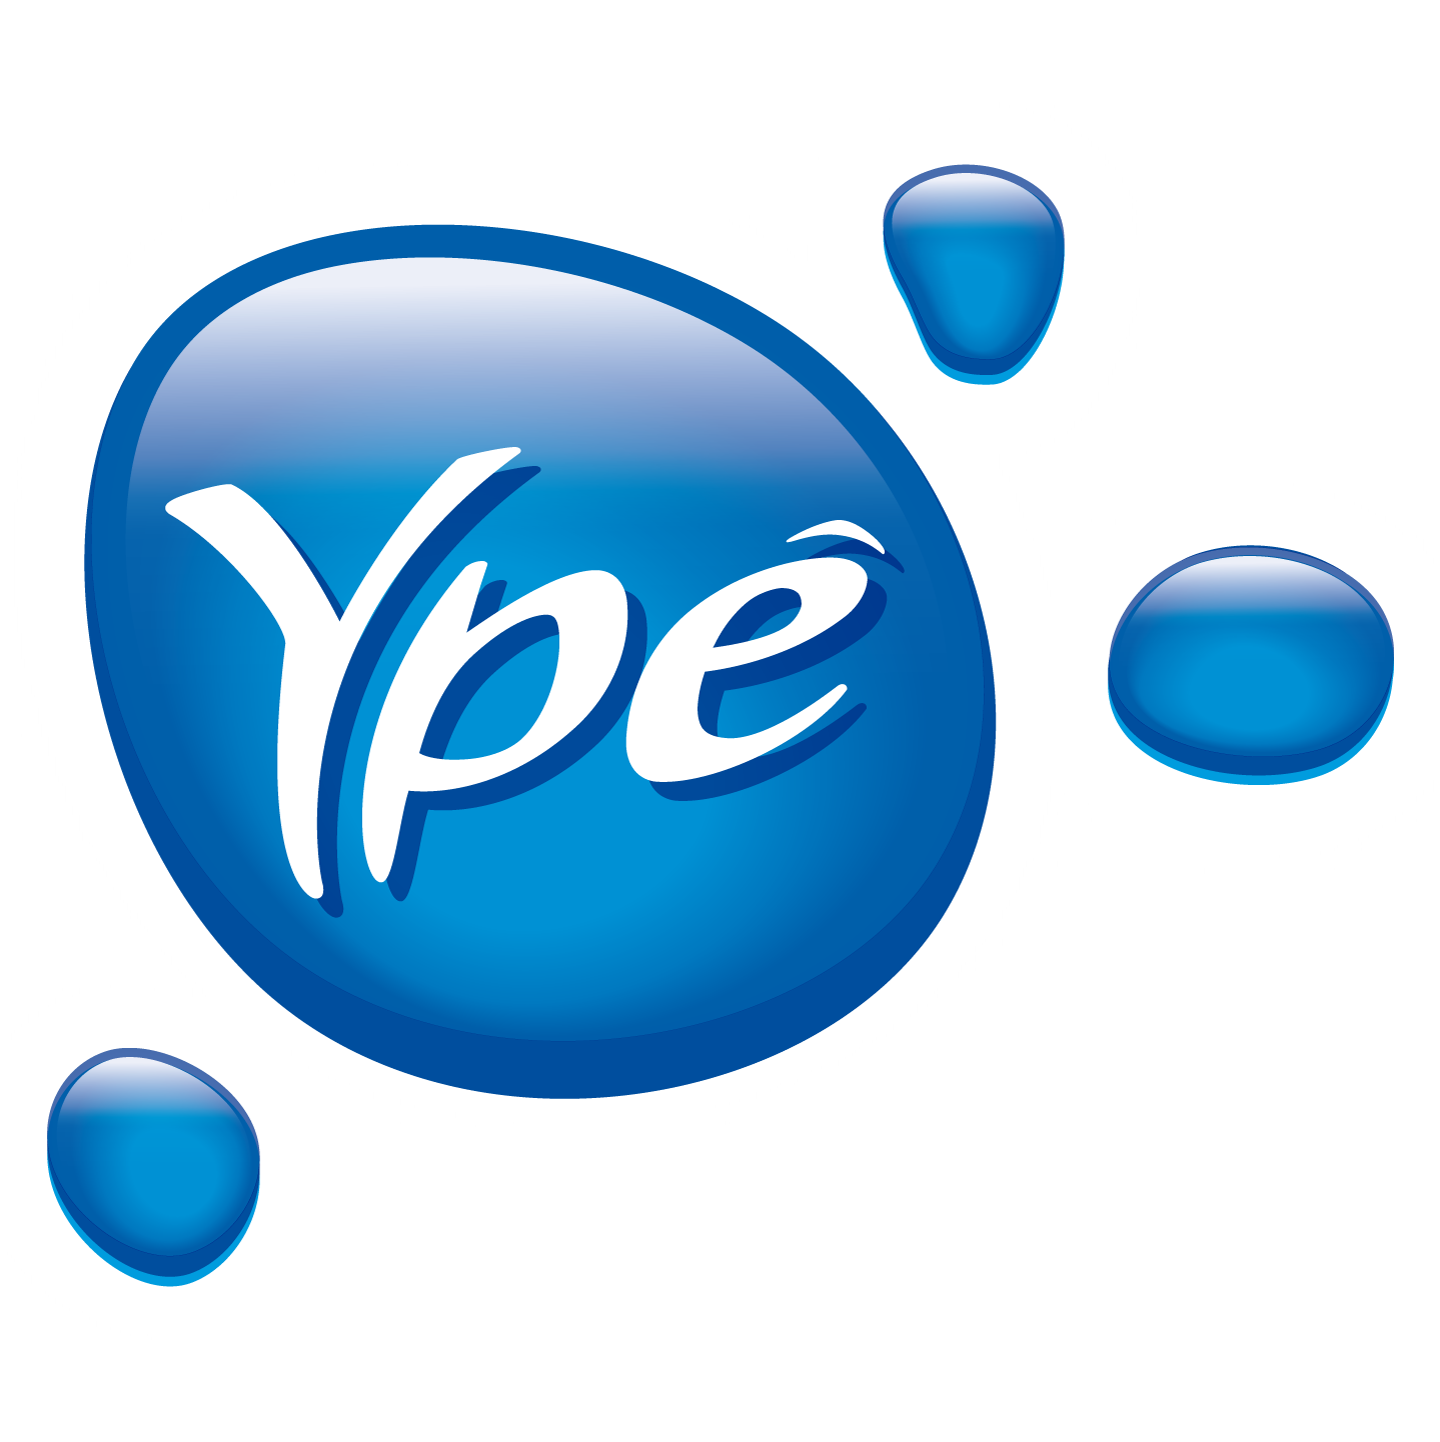 ype-logo-2